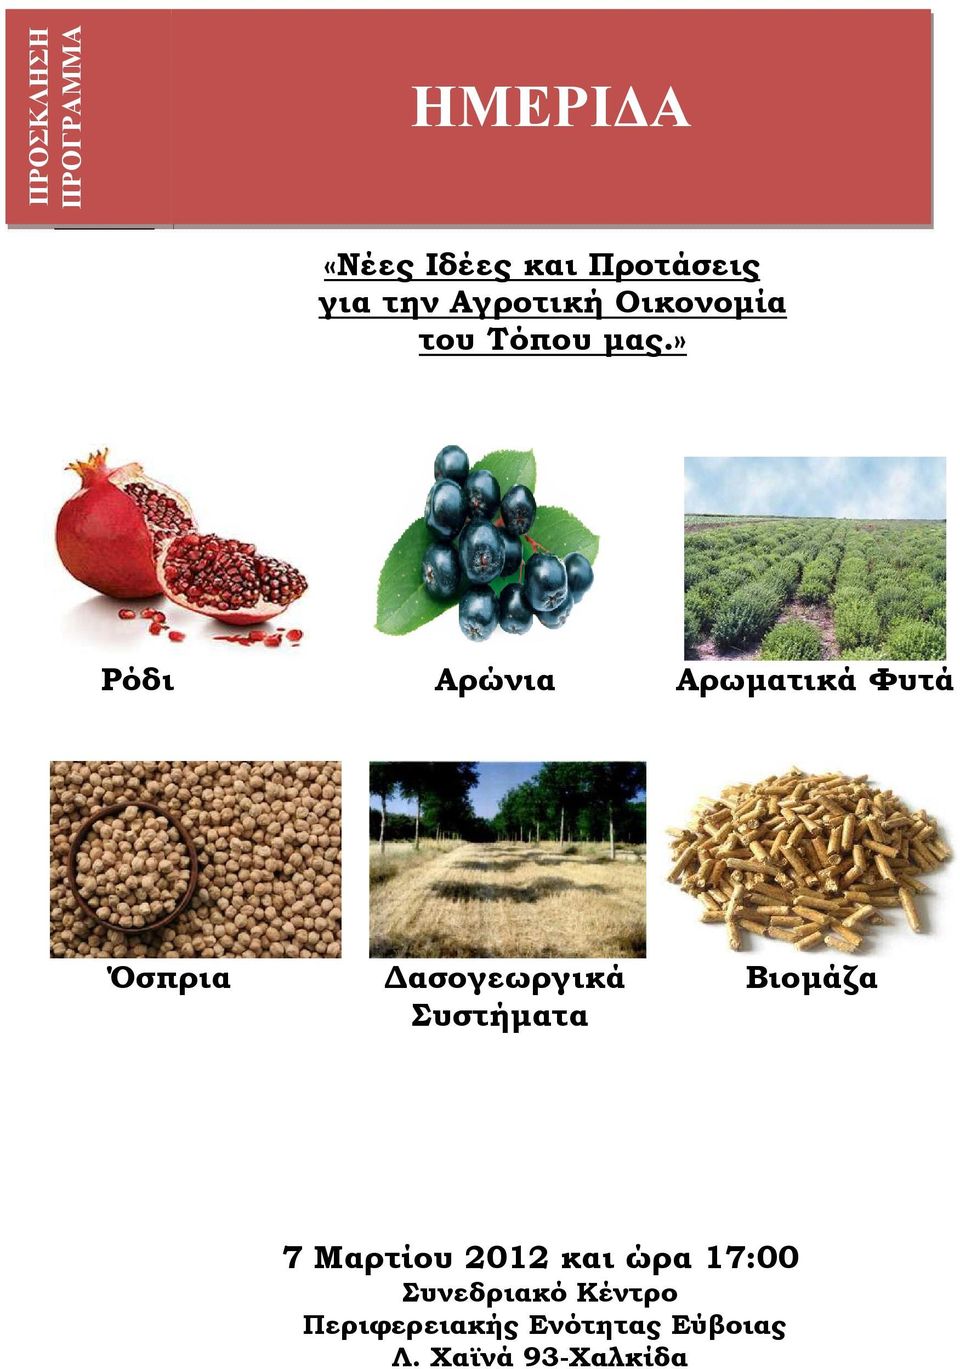 » Ρόδι Αρώνια Αρωµατικά Φυτά Όσπρια ασογεωργικά Βιοµάζα